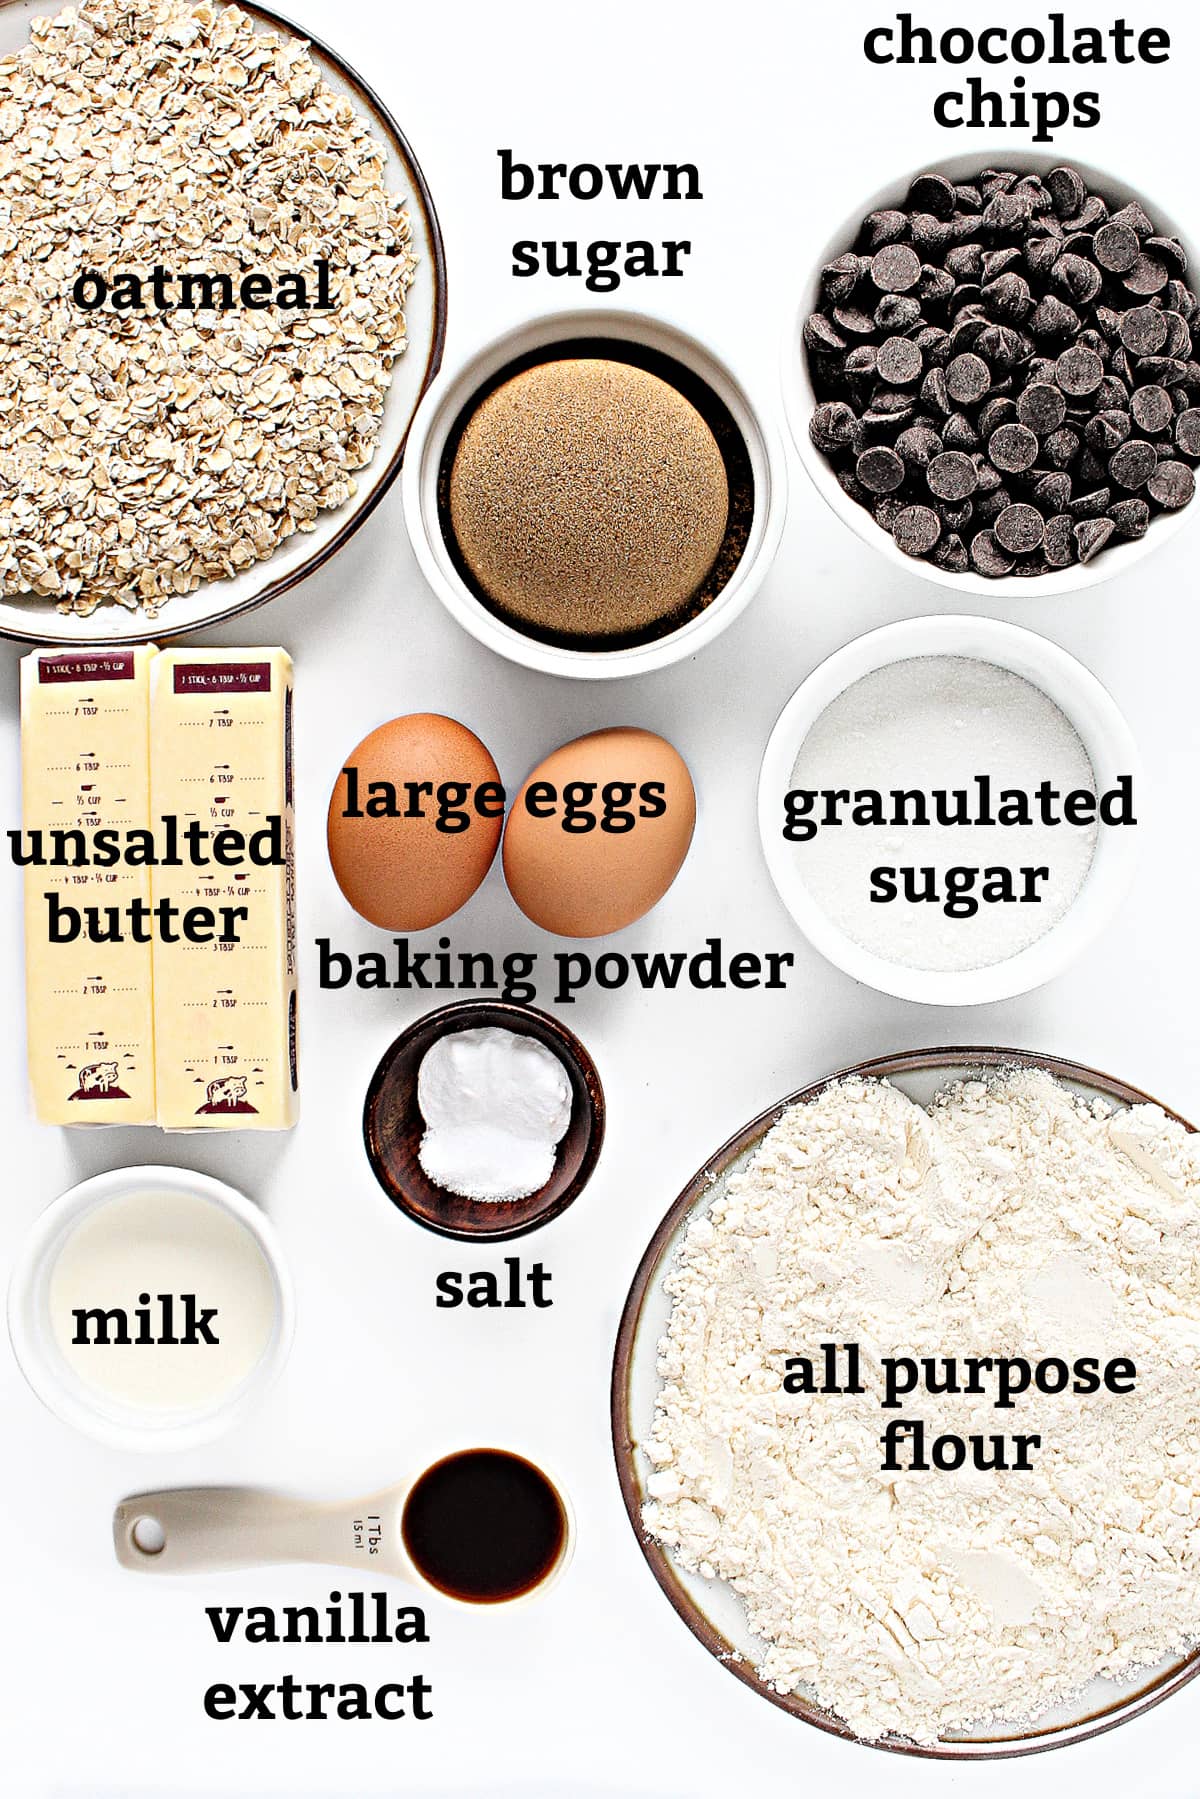 Ingredients: oats,chocolate chips, brown sugar, white sugar, eggs, butter, milk, salt, baking powder, flour, vanilla.